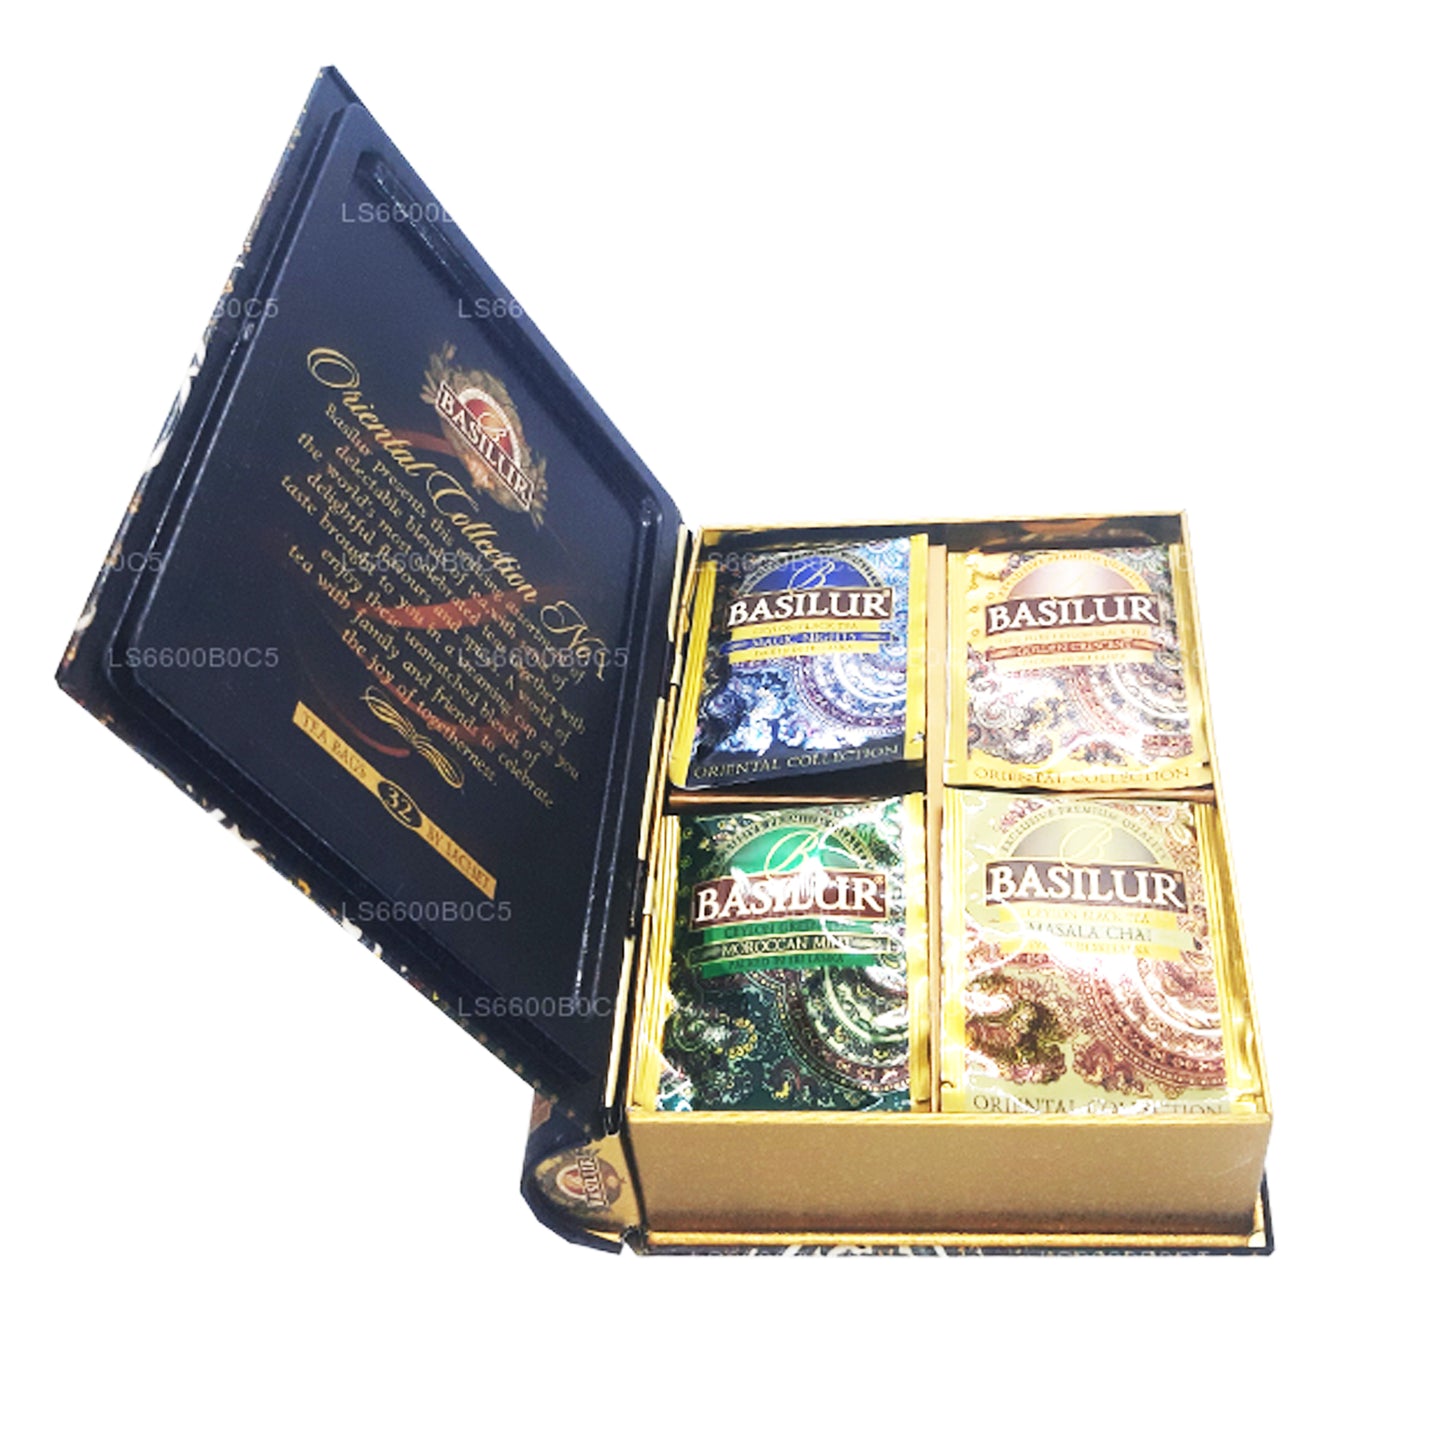 Чайная книга «Восточная коллекция Basilur», том 1 (60 г), 32 пакетика чая